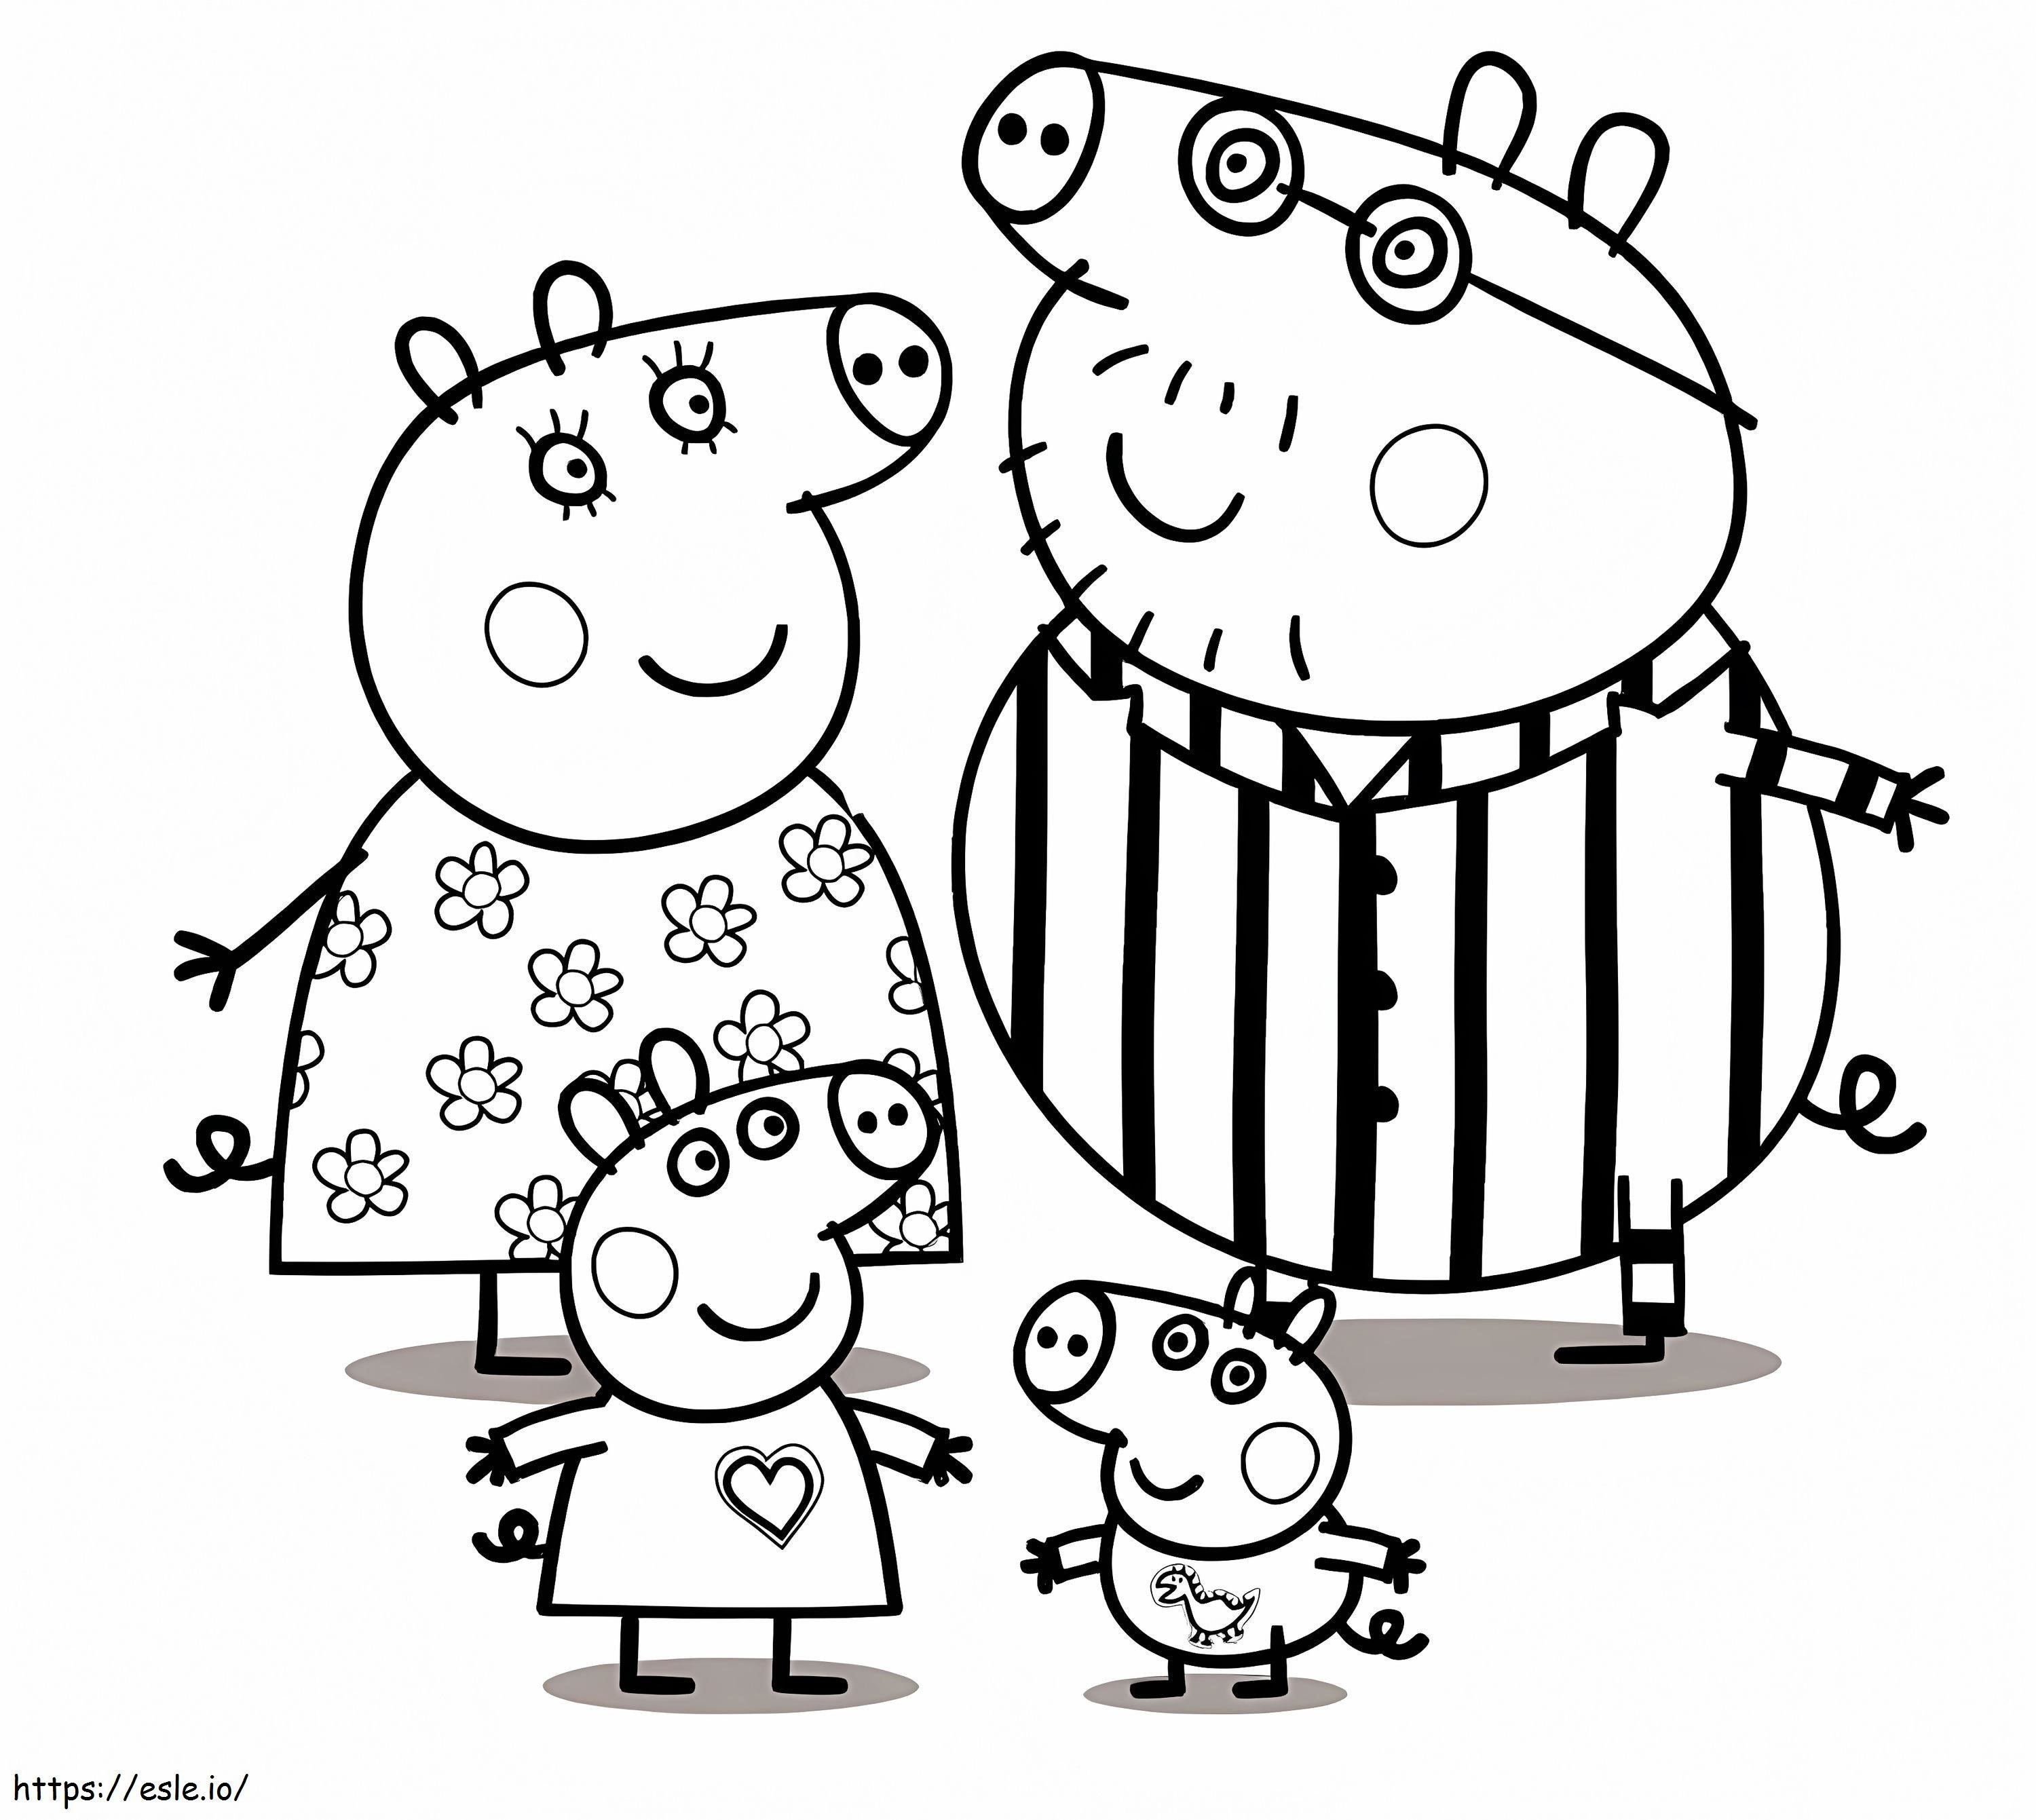 Famiglia Peppa Pig in pigiama da colorare